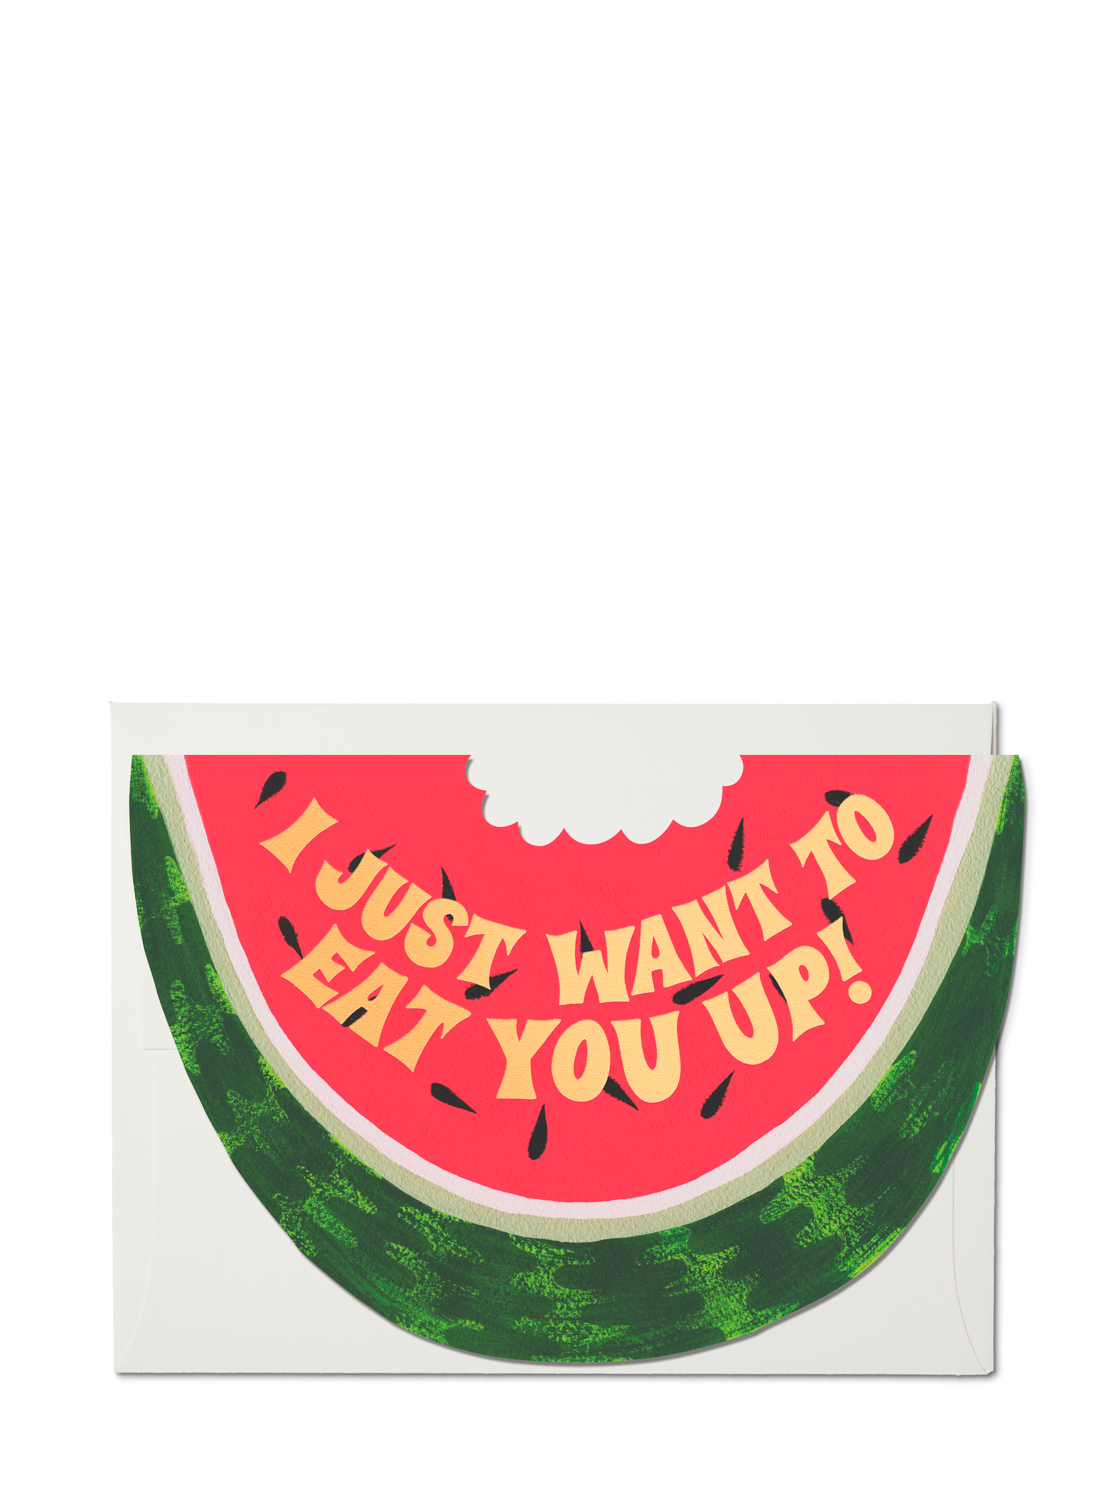 Wally The Watermelon by Oli & Carol – Junior Edition